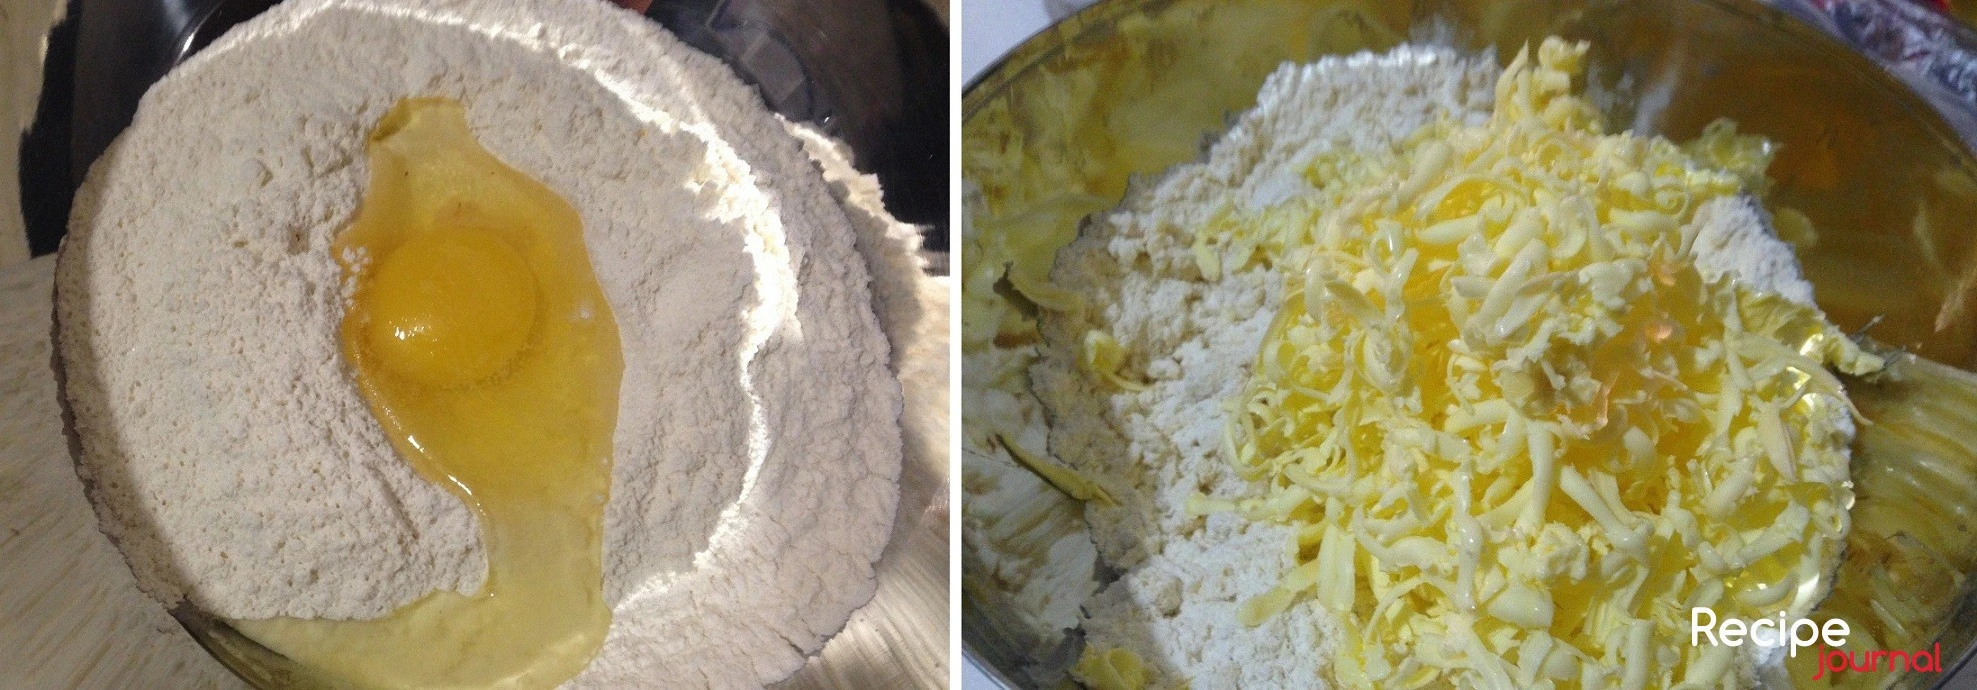 Начинаем с приготовления теста. Муку пшеничную перетираем с размягченным сливочным маслом и вбиваем 1 яйцо. Замешиваем тесто, скатываем в шар и отправляем в холодильник.